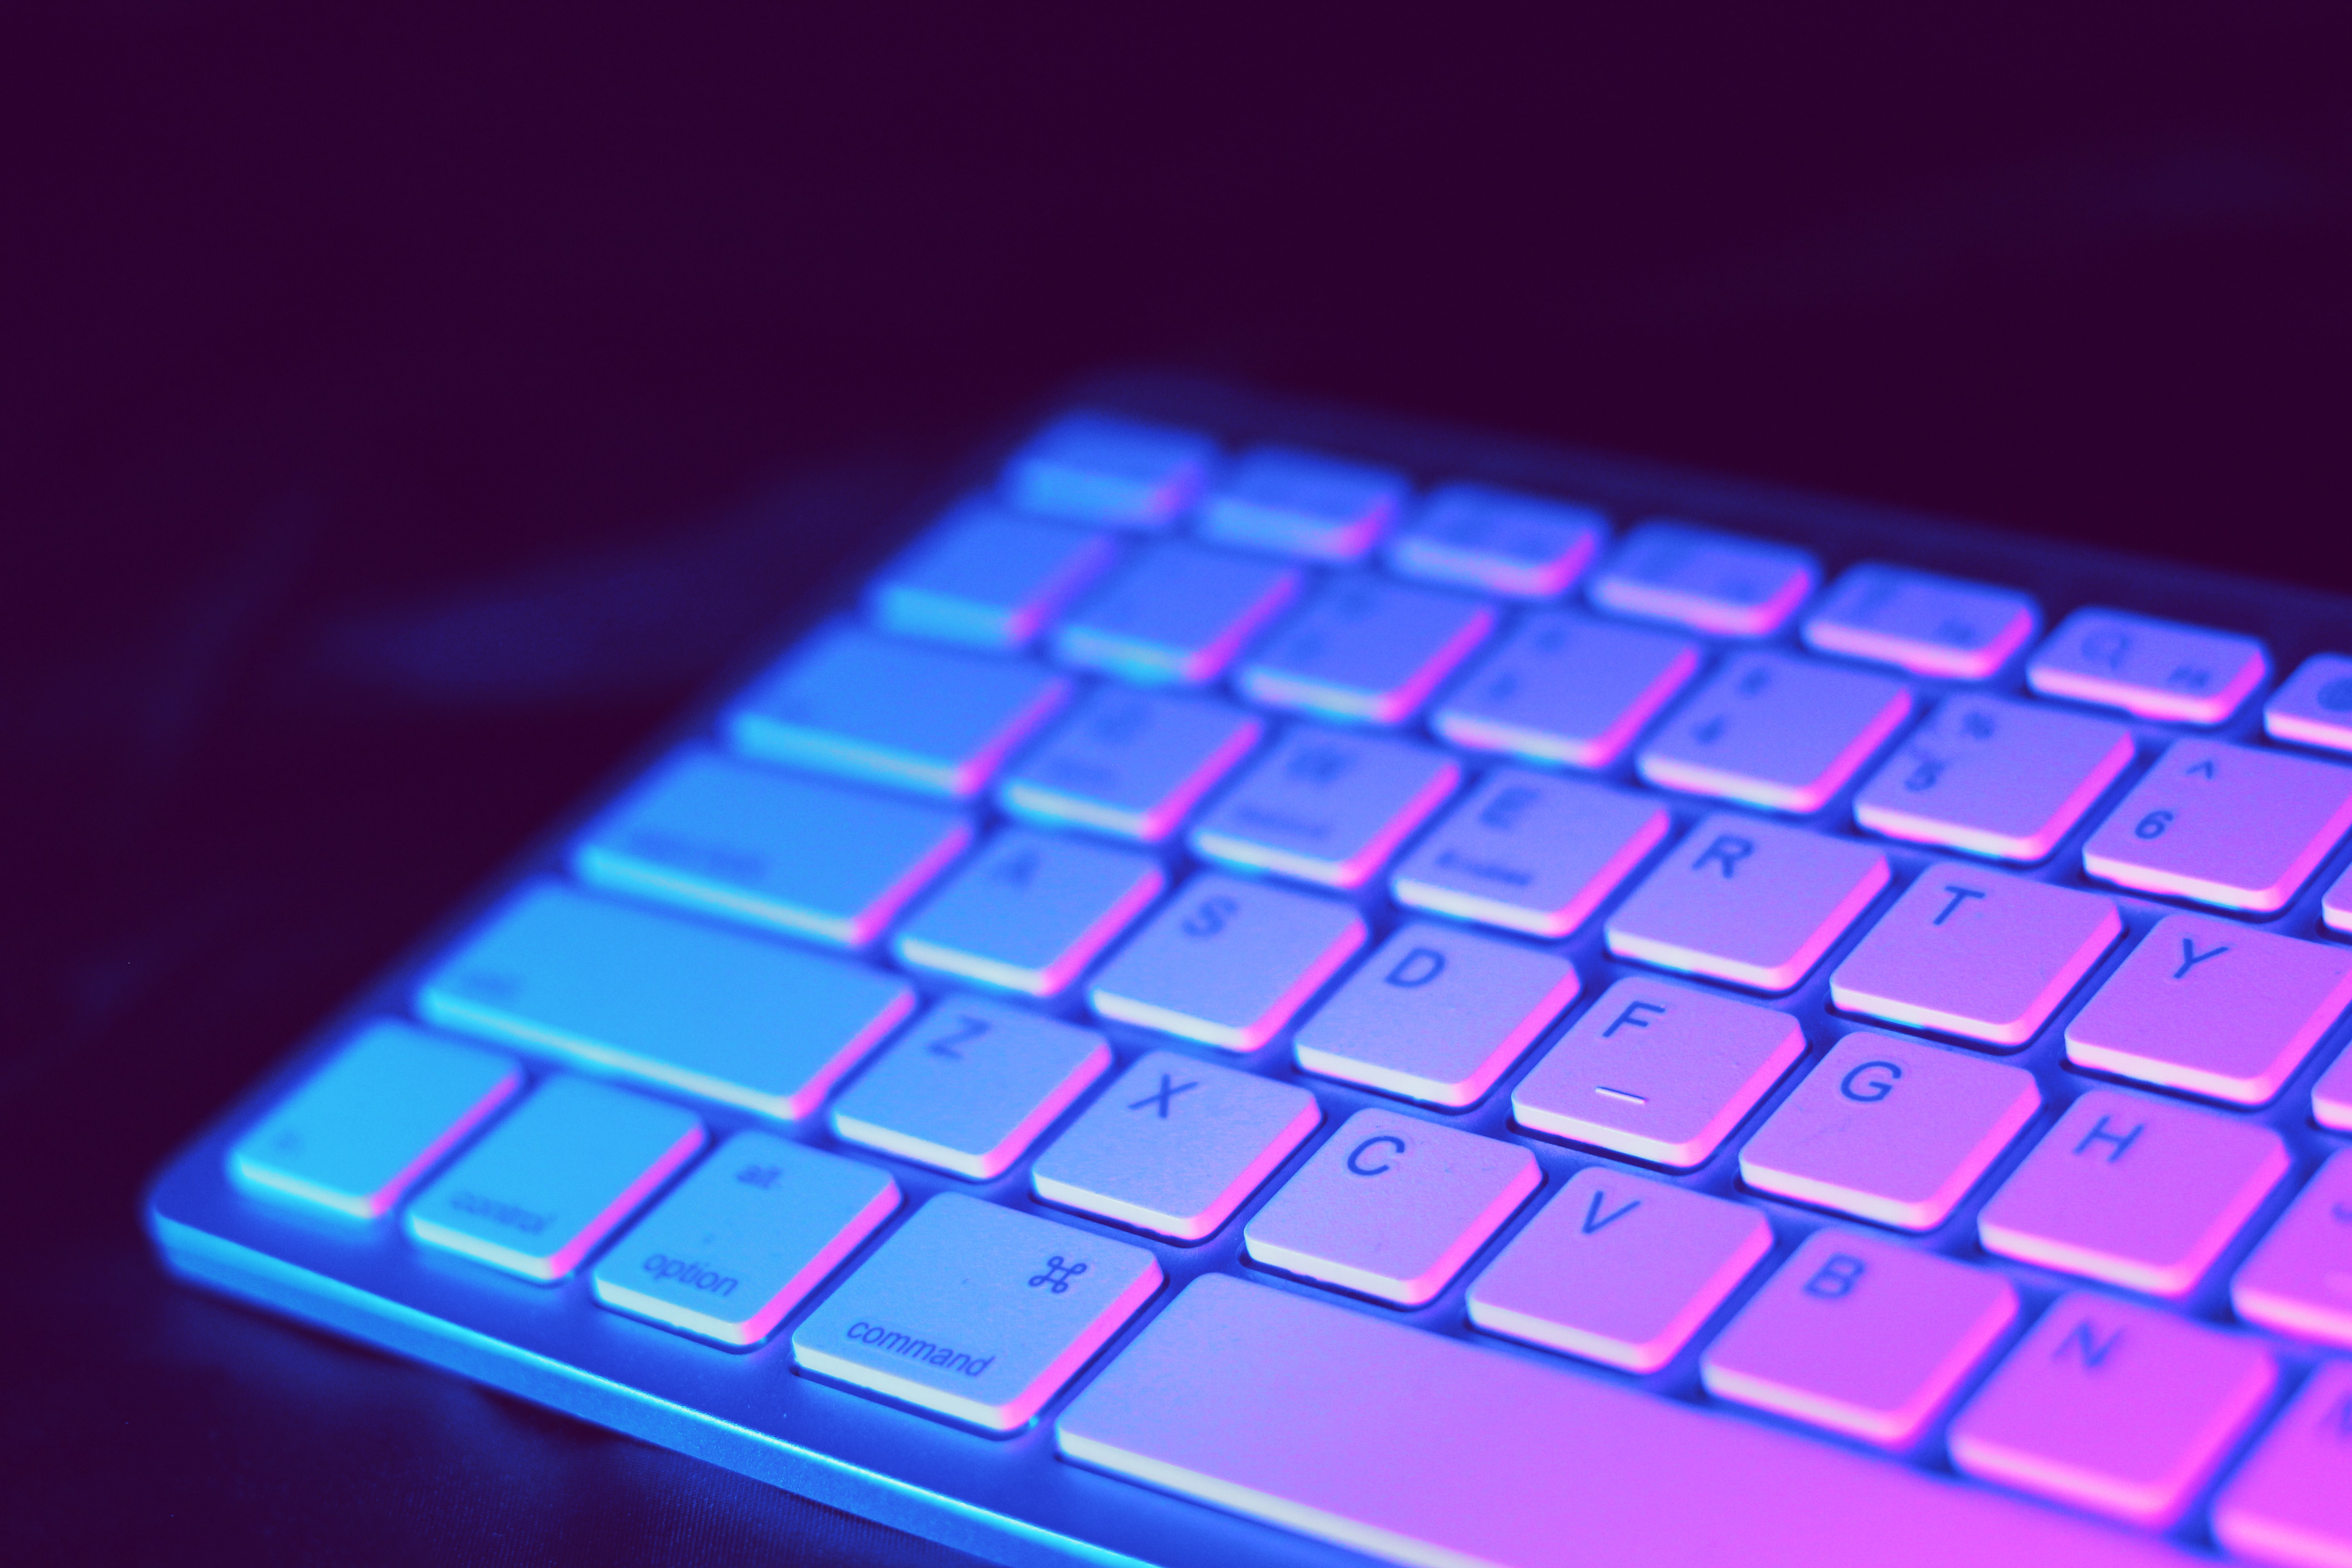 El slime puede ayudar a limpiar, pero debe ser cualquier tipo de esta sustancia, pues el teclado podría destropearse (Crédito: pixbay)